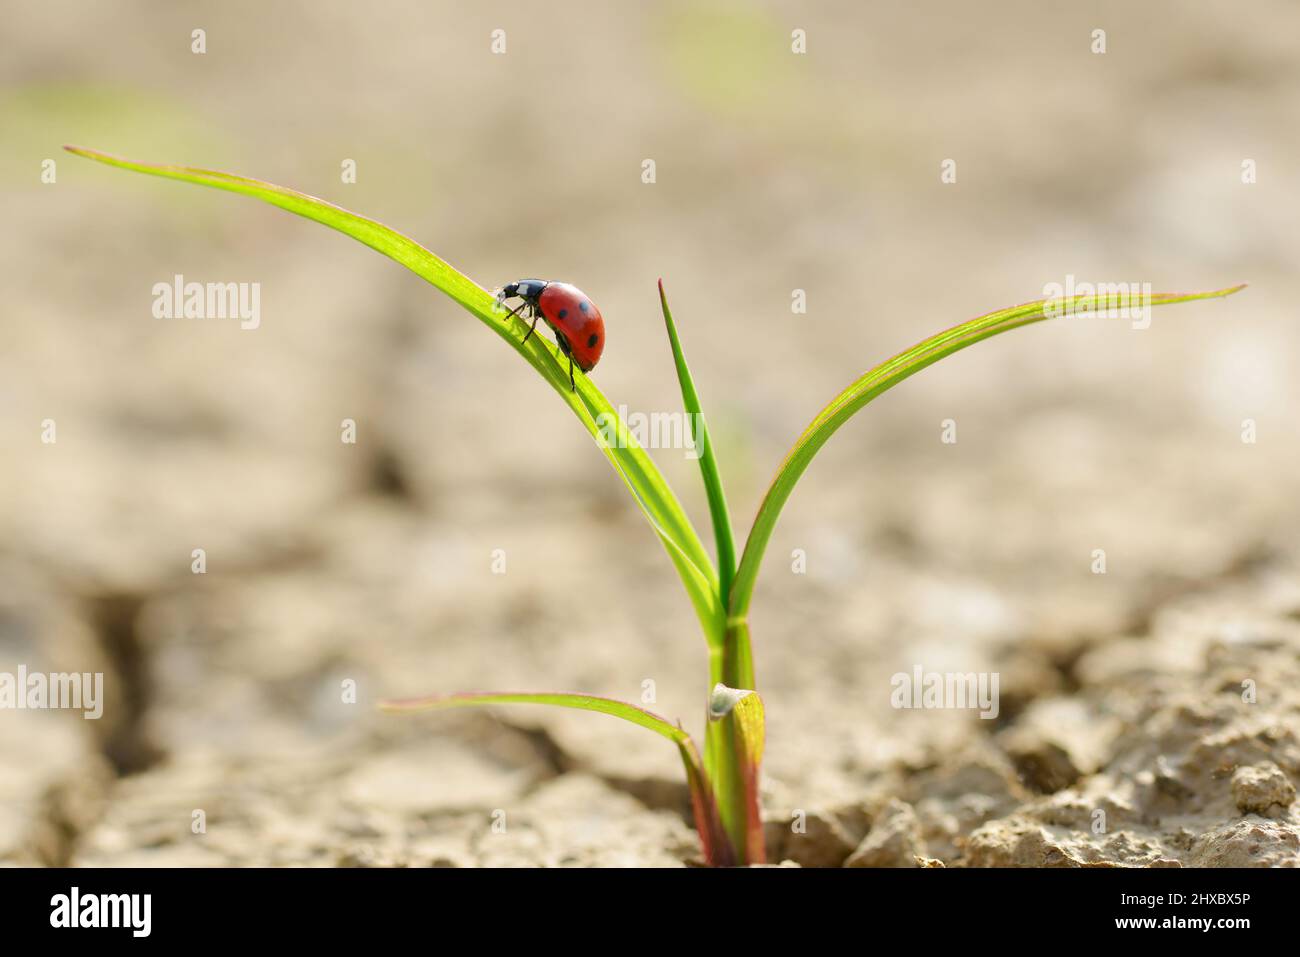 Ladybug en planta smal que crece de suelo seco agrietado. Nuevo concepto de vida. Foto de stock